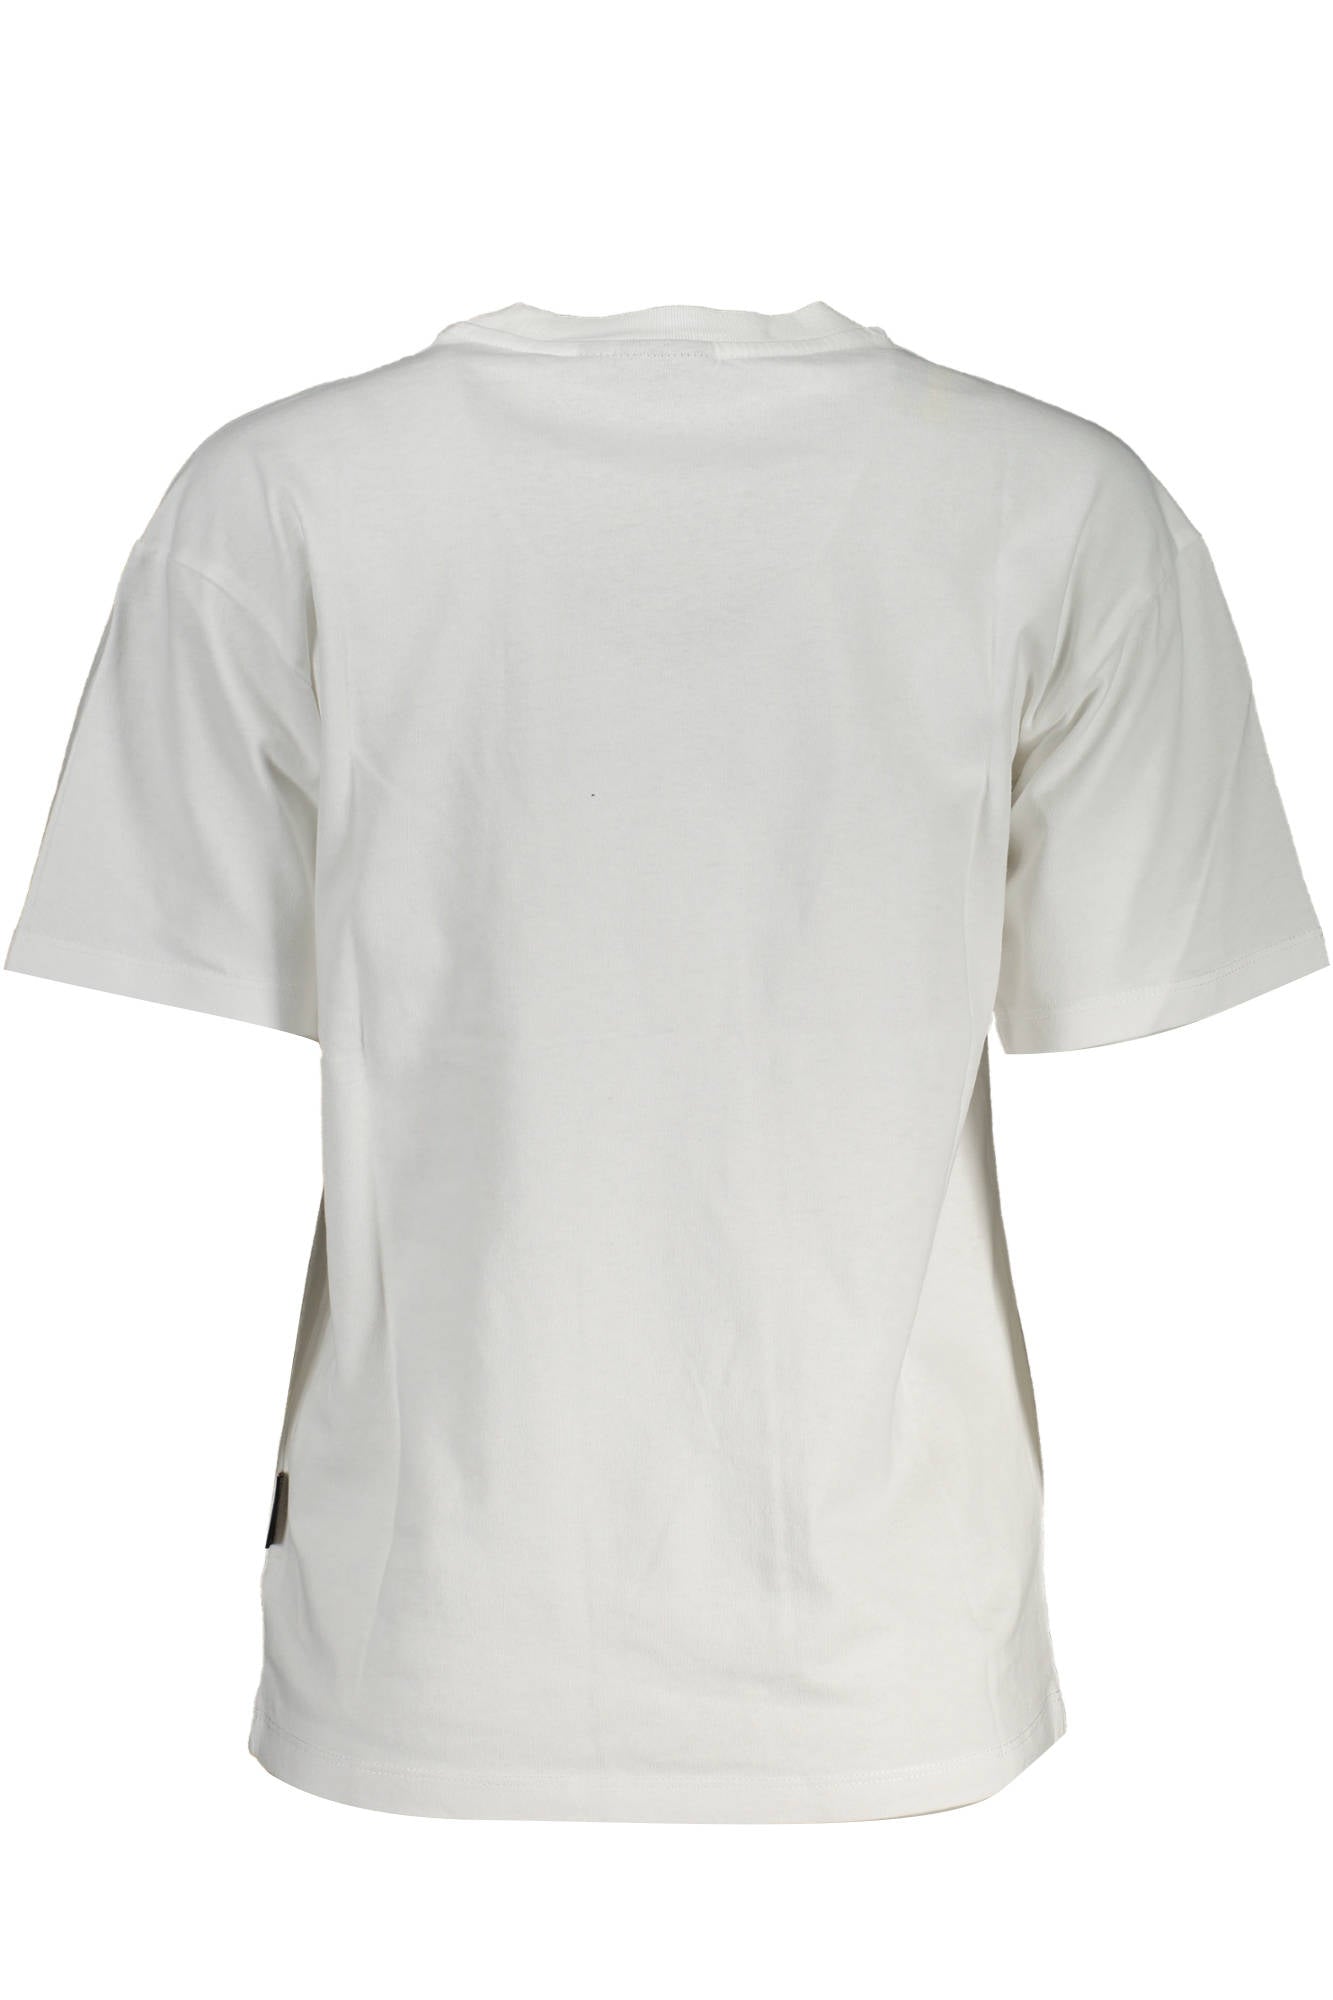 Napapijri White Cotton Tops & T-Shirt - Fizigo